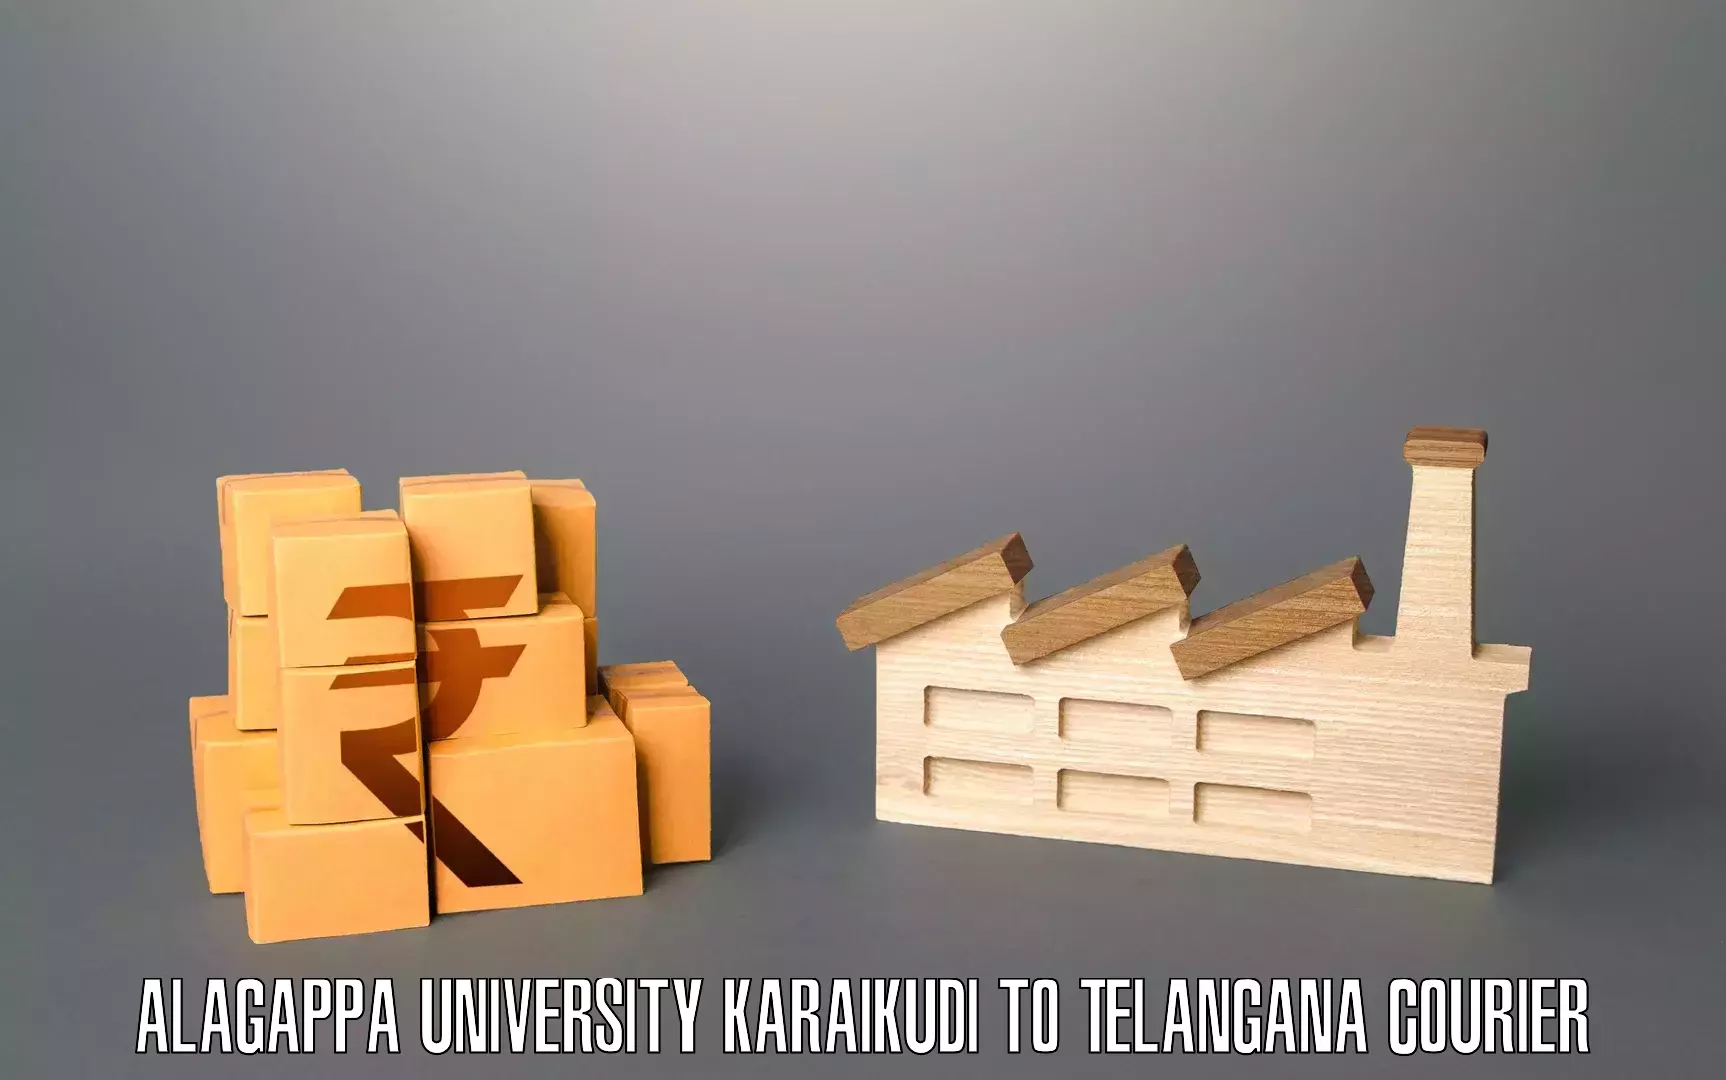 Moving and packing experts Alagappa University Karaikudi to Telangana